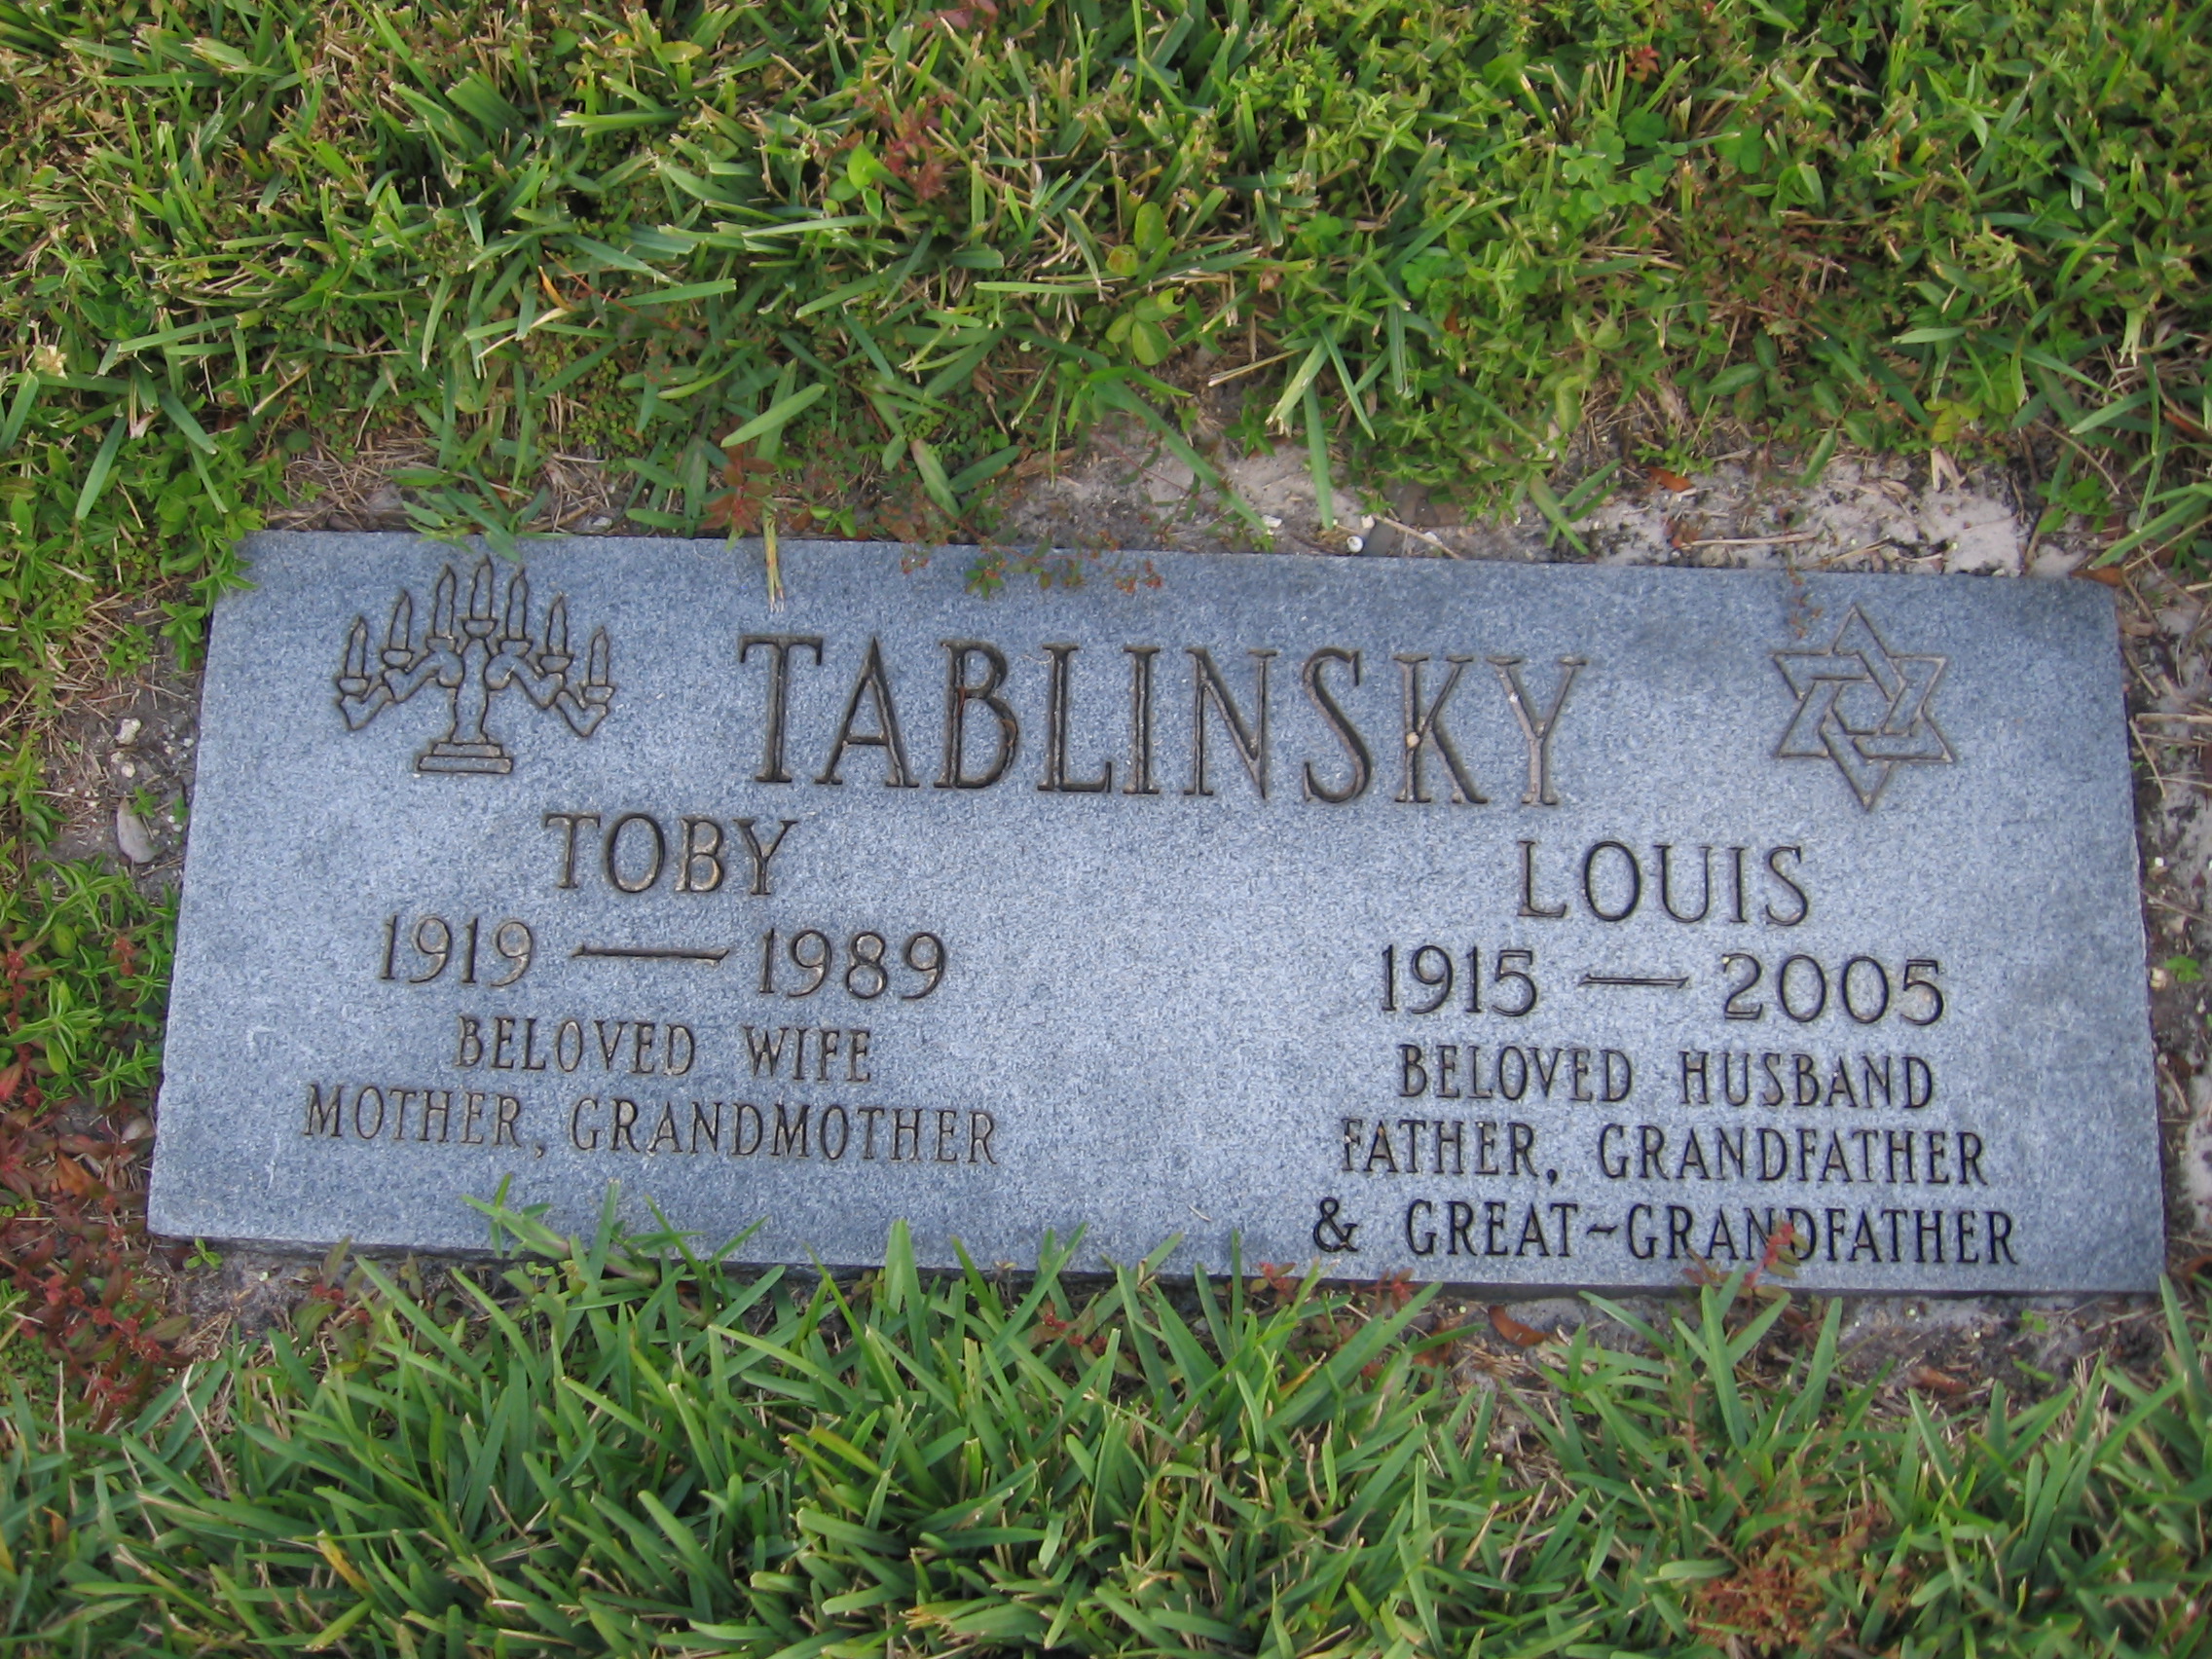 Louis Tablinsky